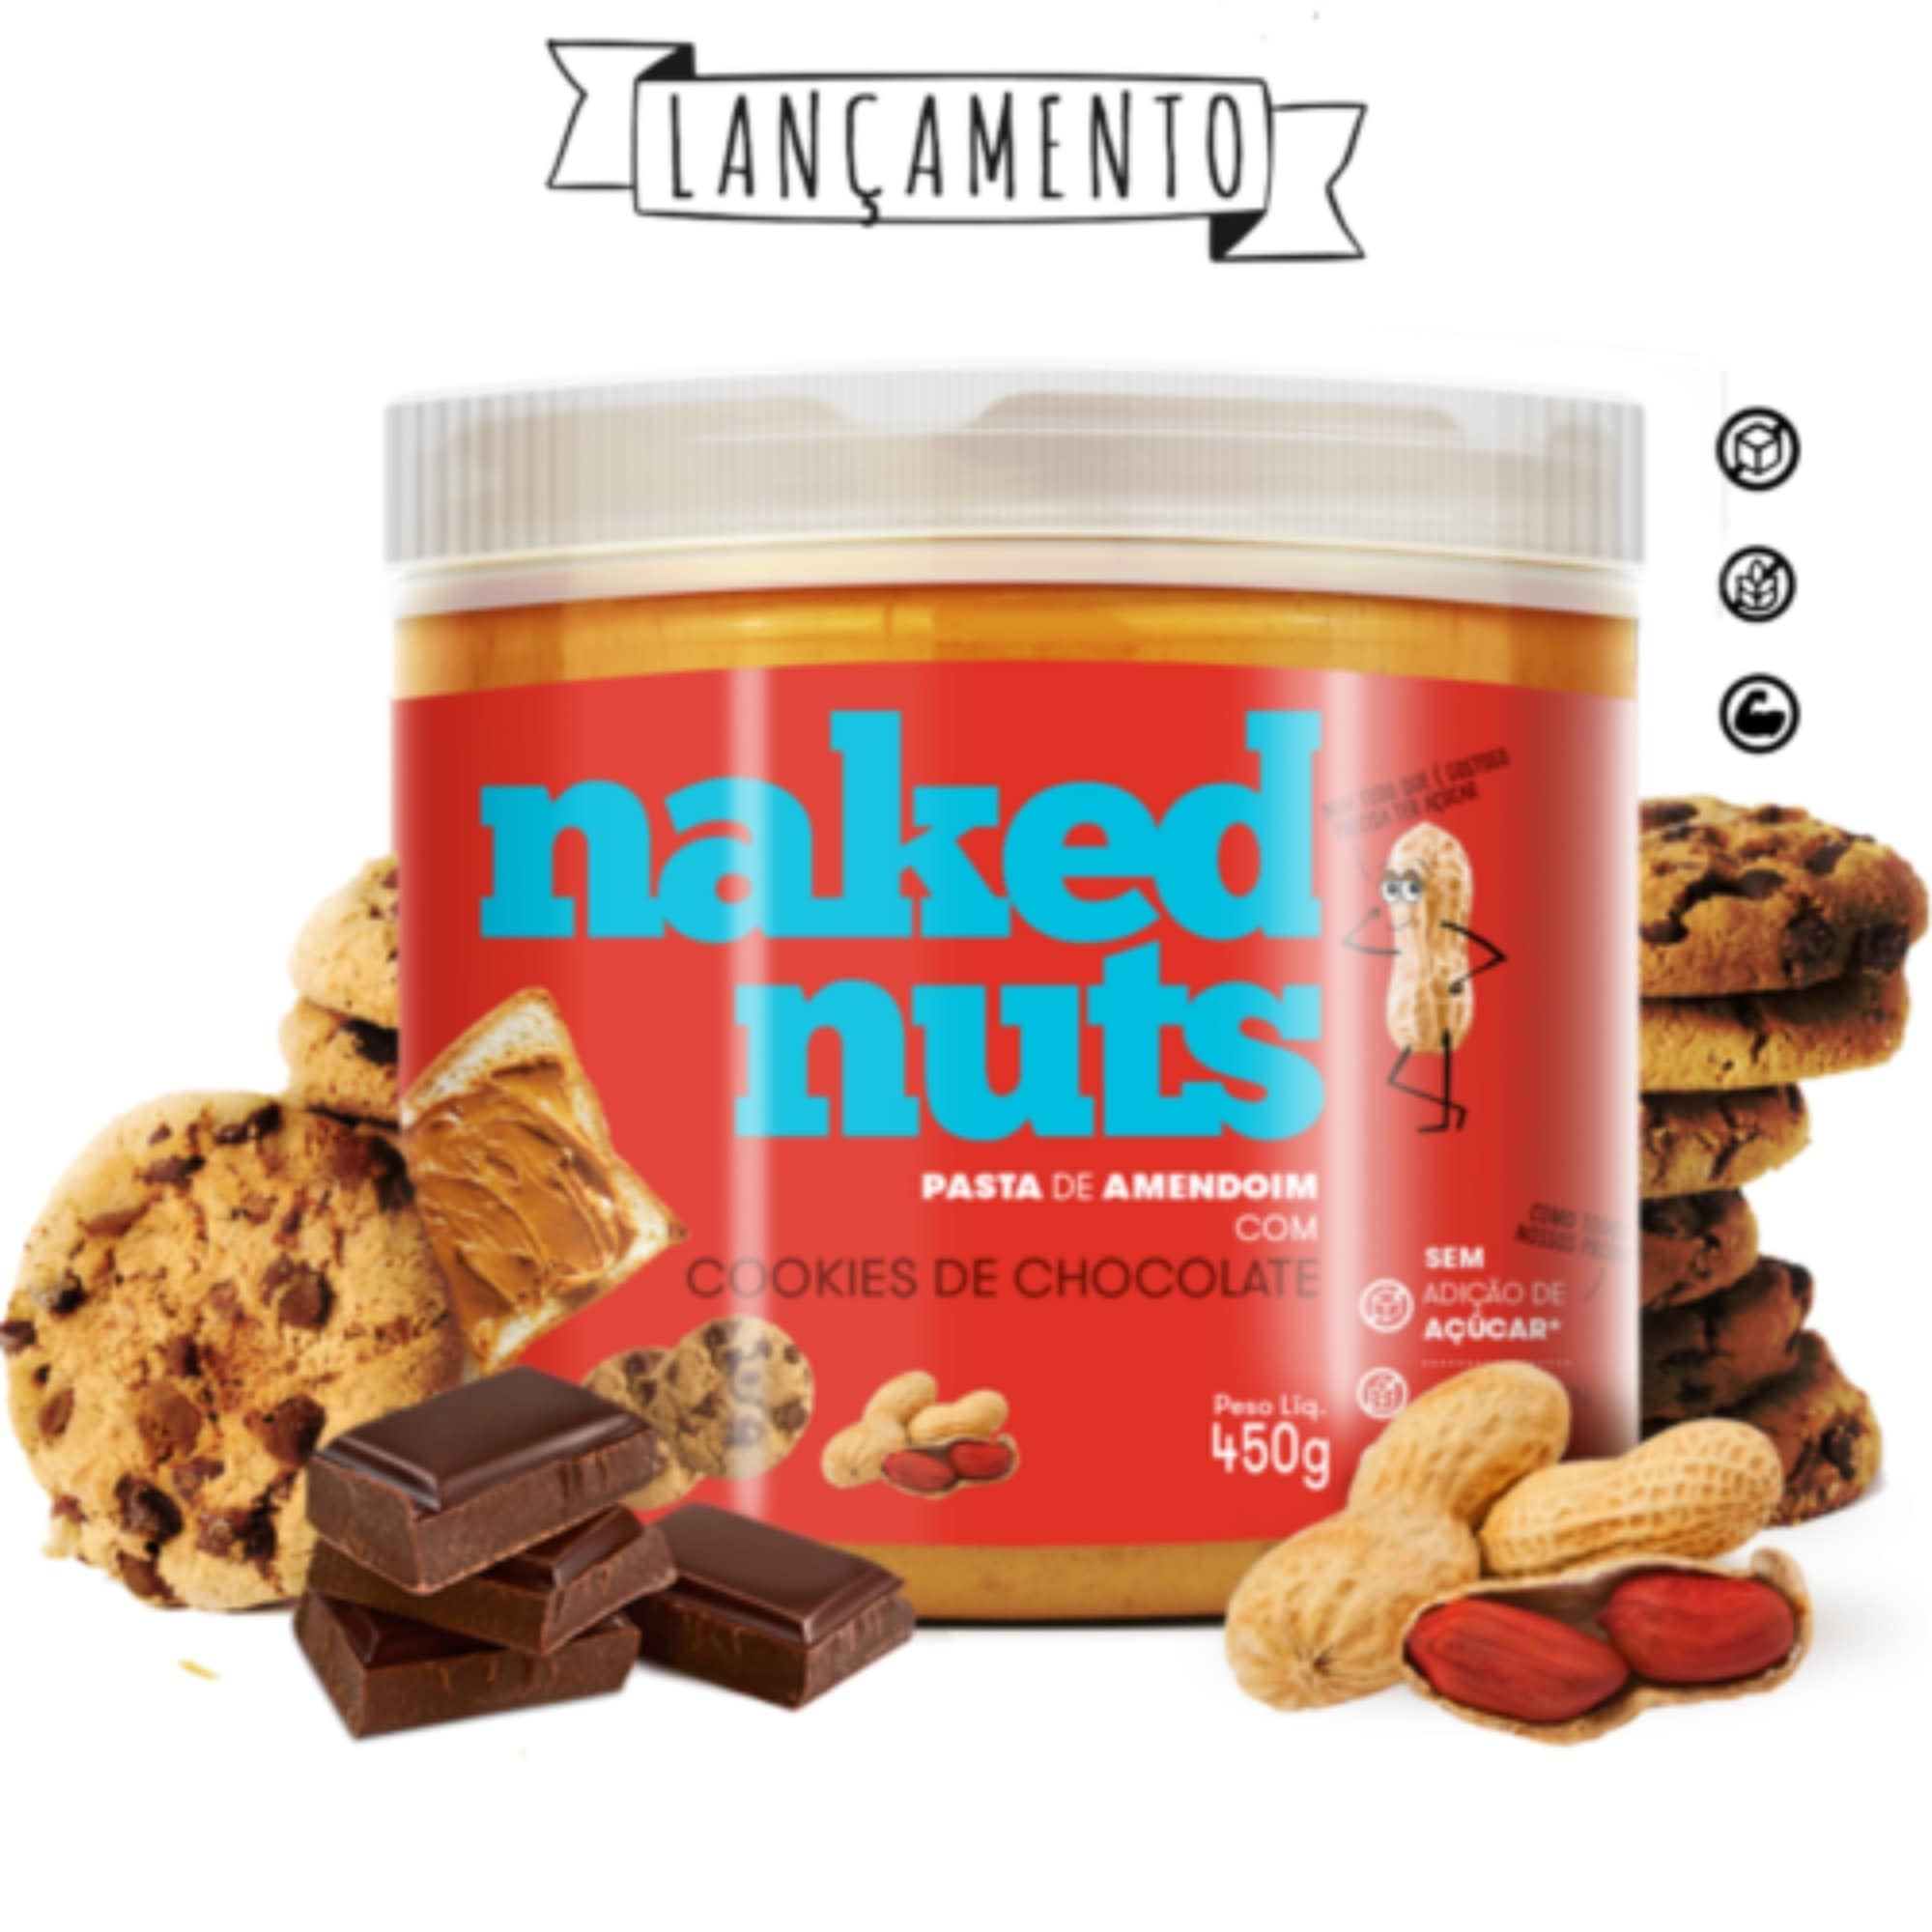 Pasta de Amendoim com Cookies de Chocolate Naked Nuts 450g - Ganhe Brinde